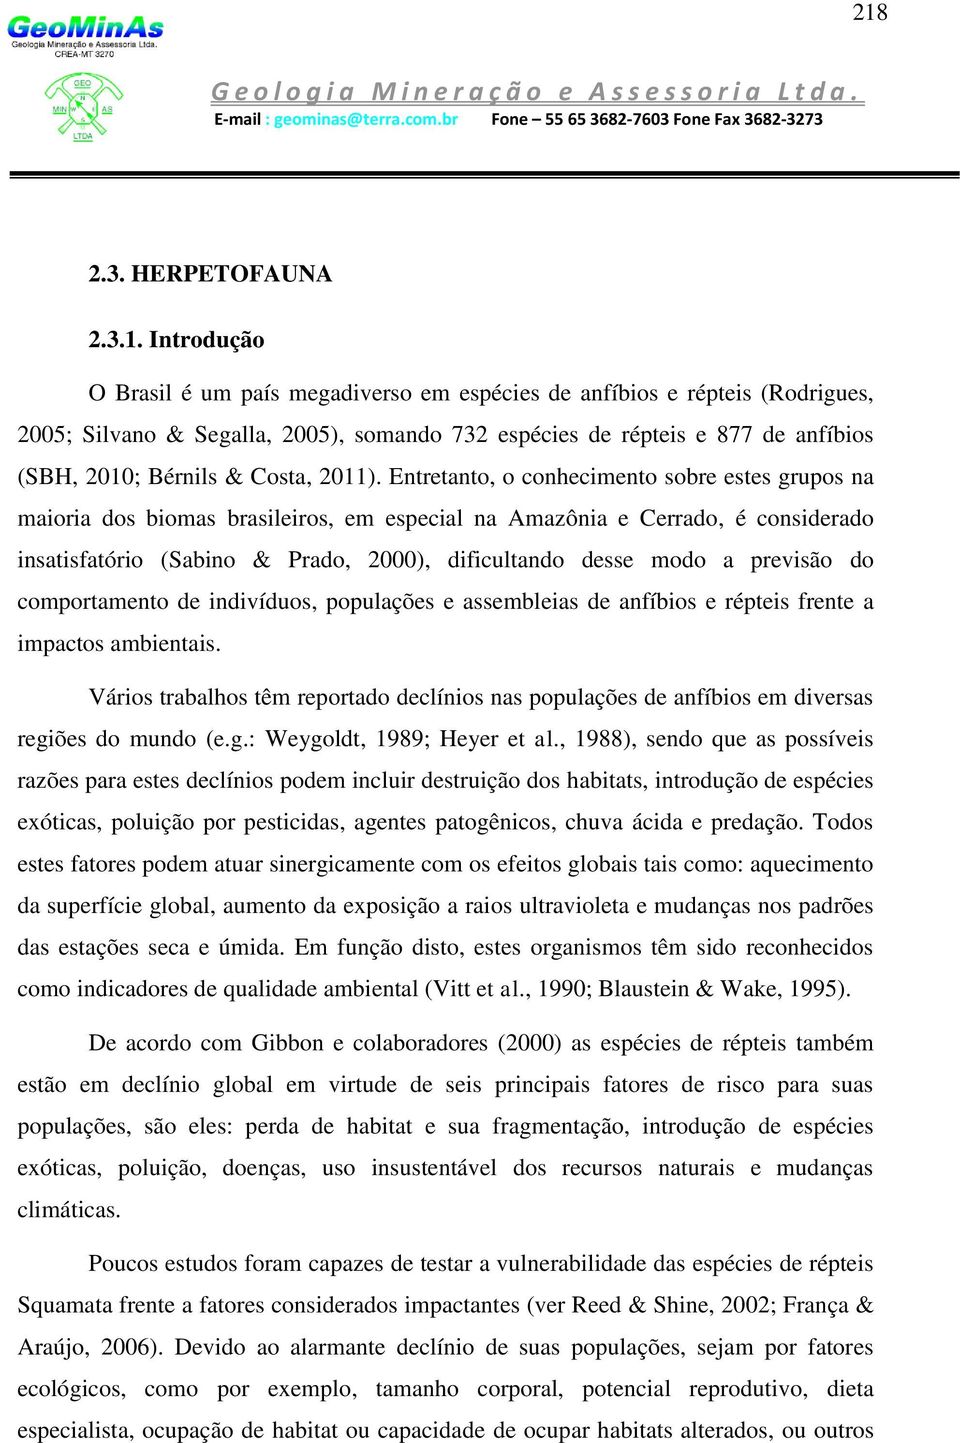 Entretanto, o conhecimento sobre estes grupos na maioria dos biomas brasileiros, em especial na Amazônia e Cerrado, é considerado insatisfatório (Sabino & Prado, 2000), dificultando desse modo a